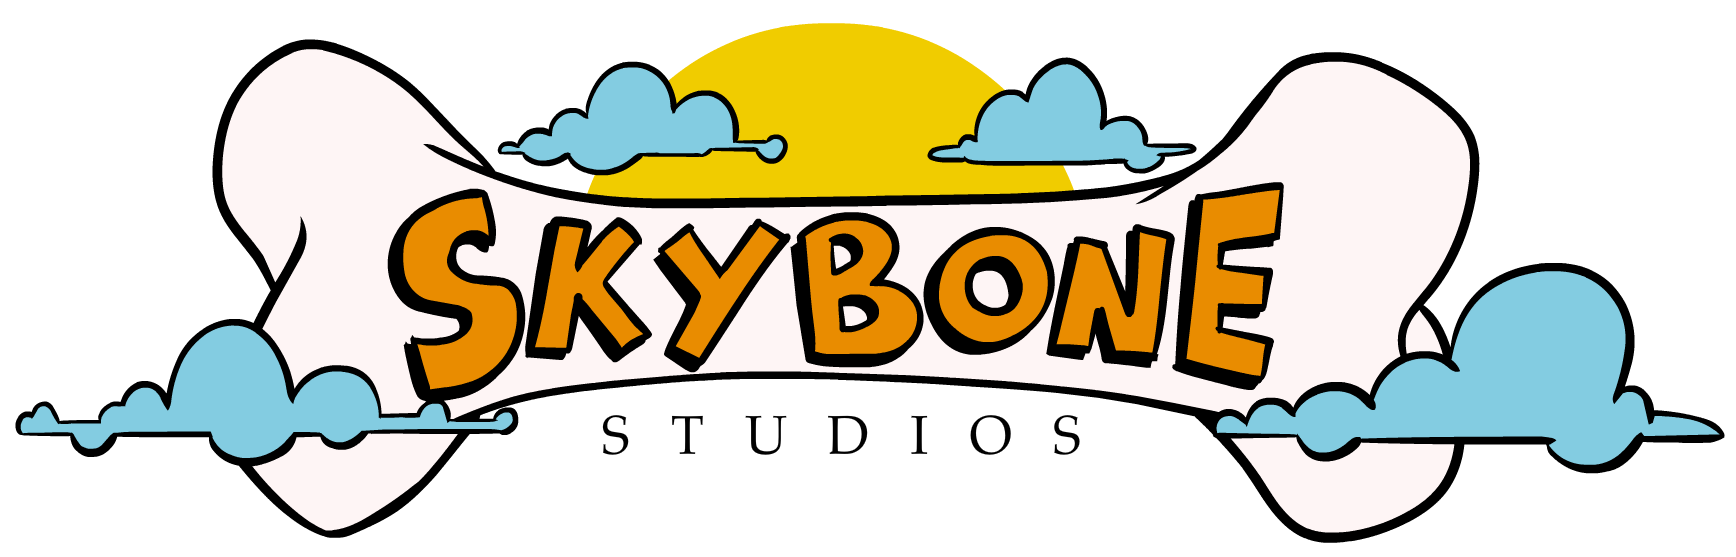 Skybone Studios